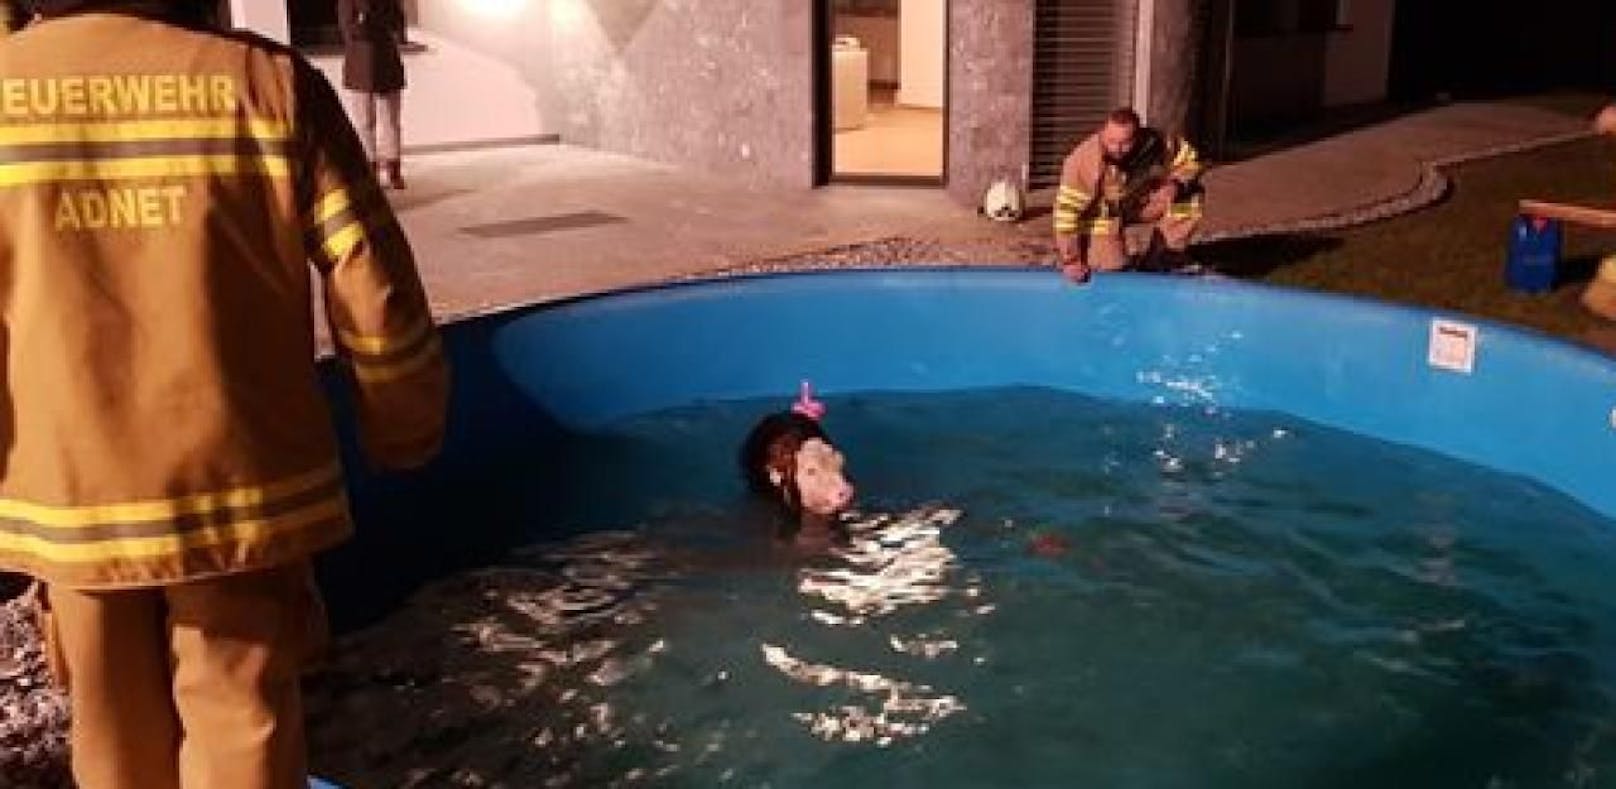 24 Feuerwehrleute retten verirrtes Kalb aus Pool